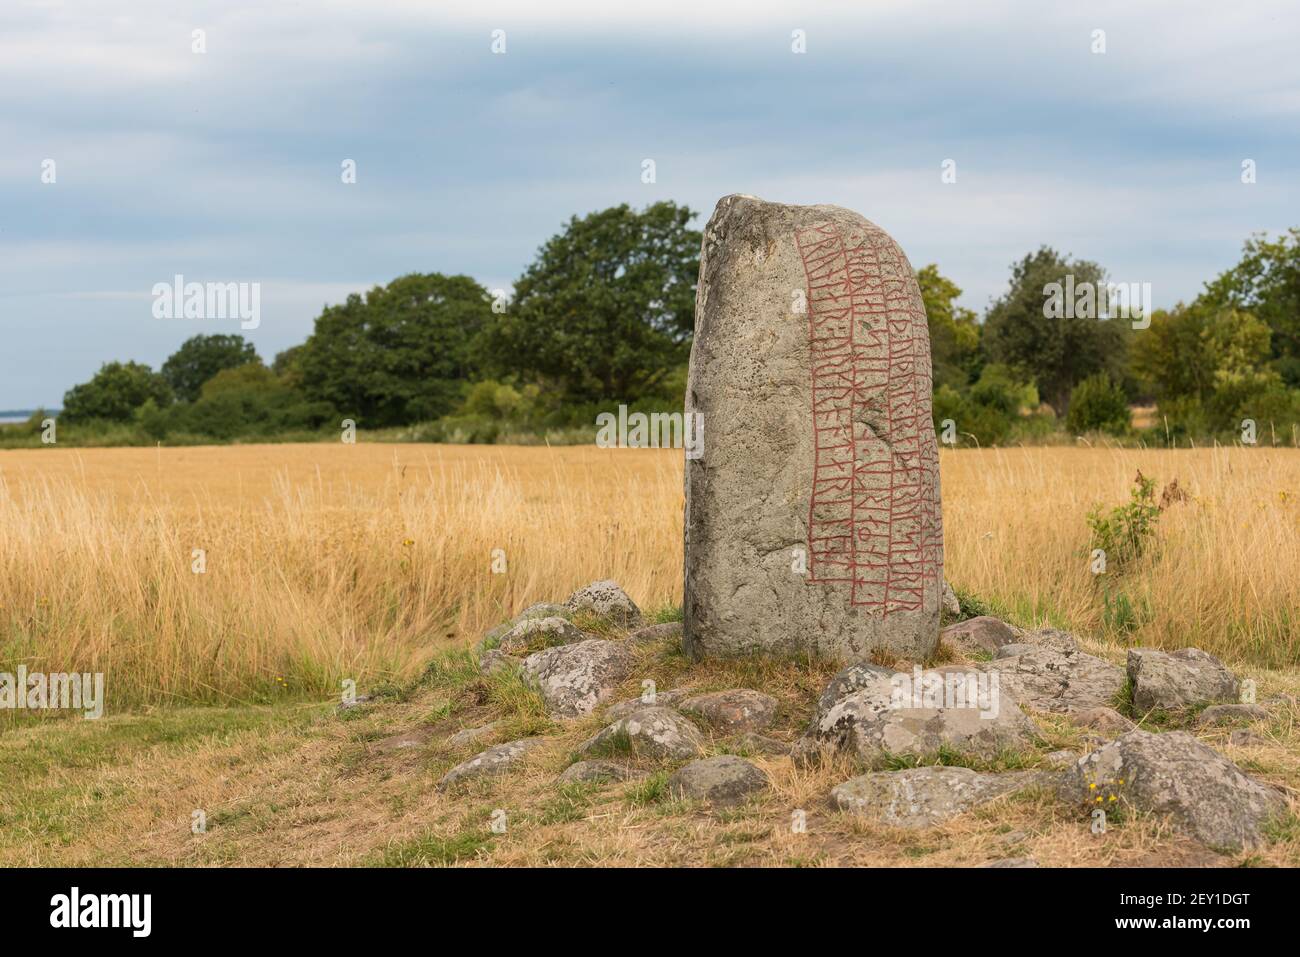 The Karlevi Rune stone Stock Photo